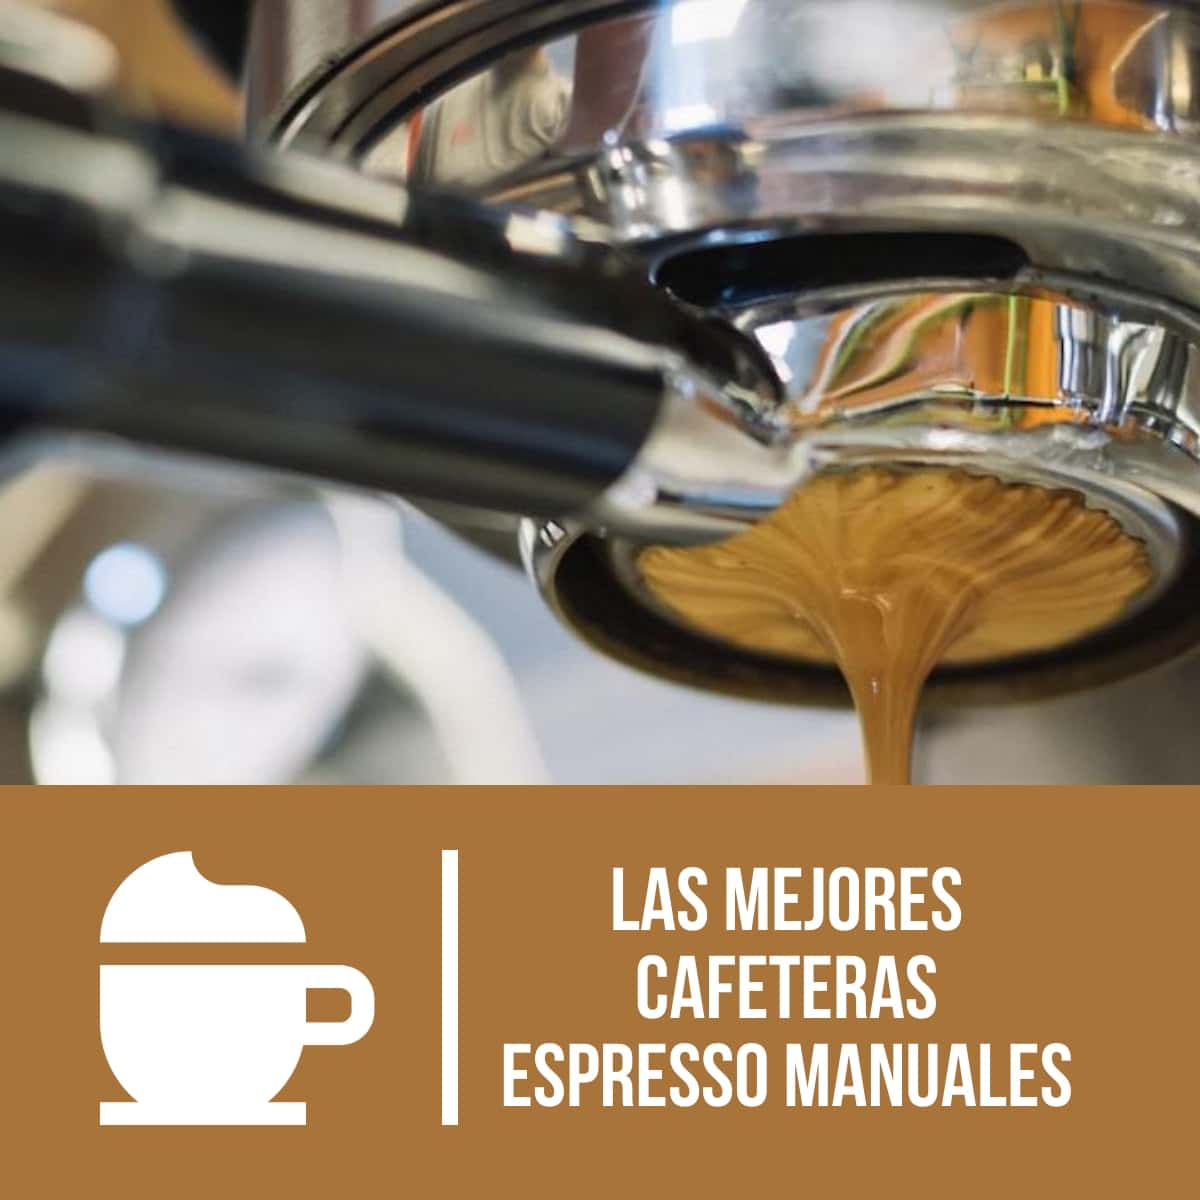 Las mejores cafeteras espresso manuales